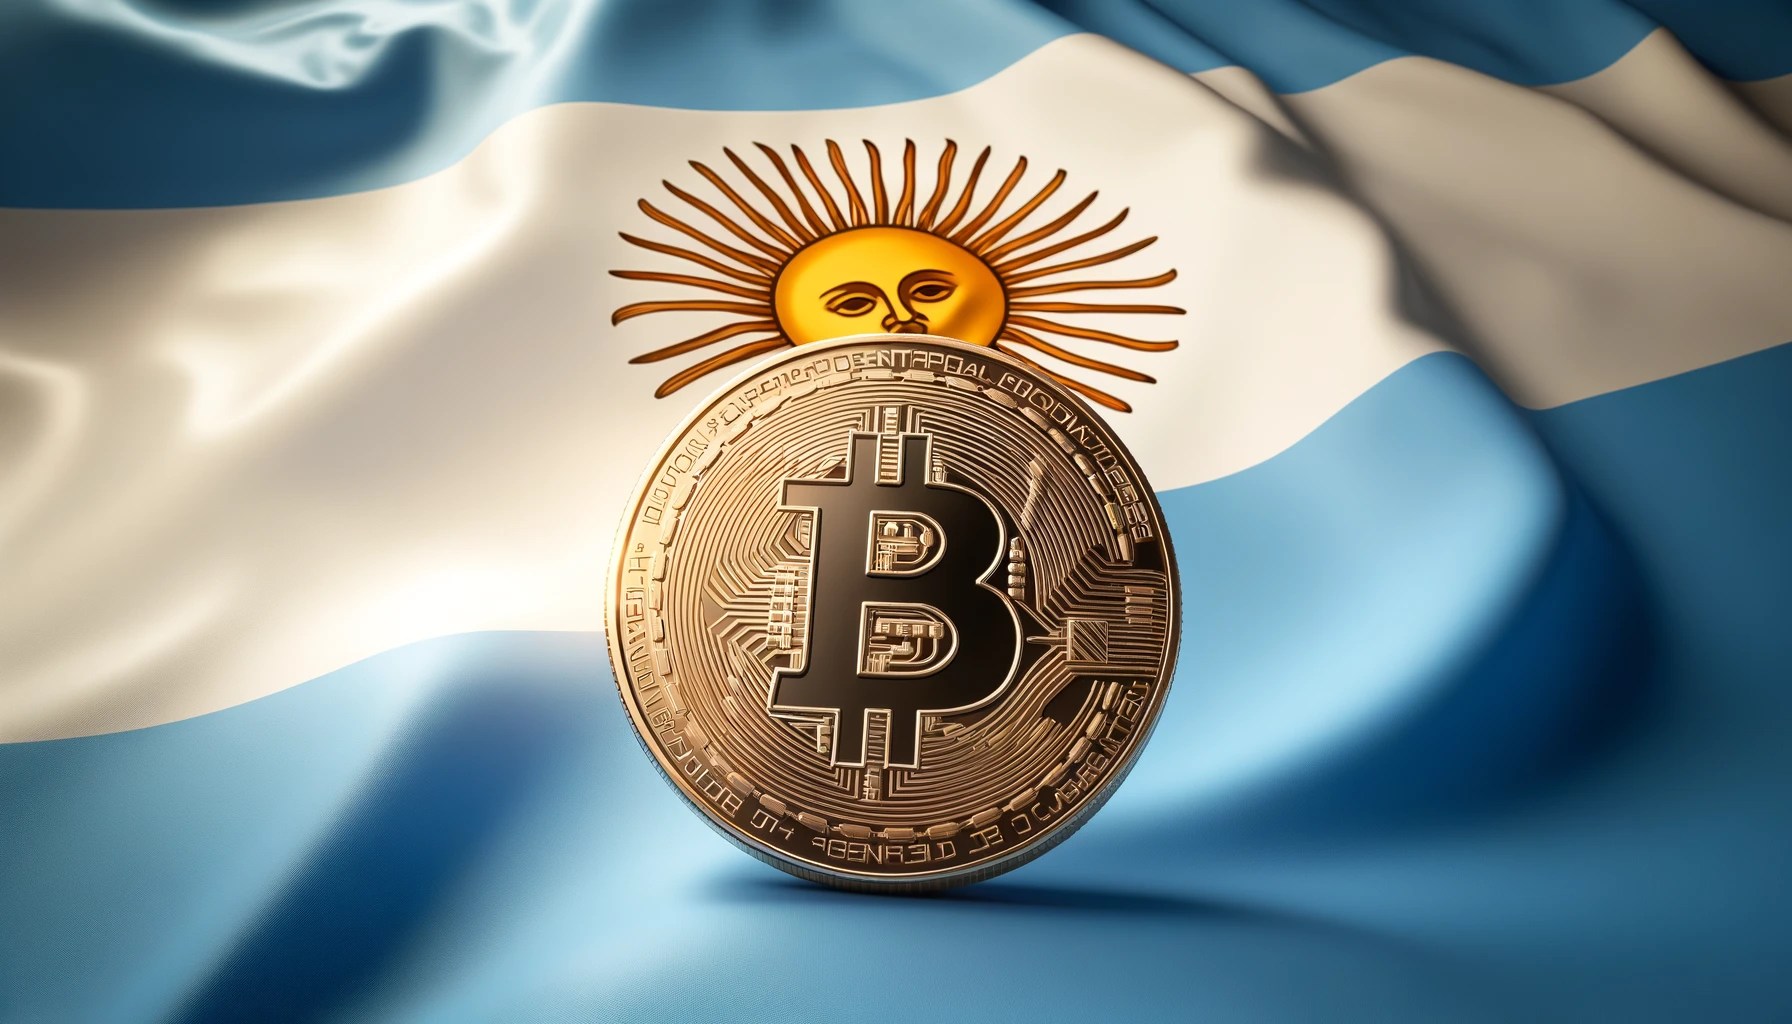 Genesis Digital Assets s'associe à YPF Luz pour construire une installation minière verte de Bitcoin en Argentine